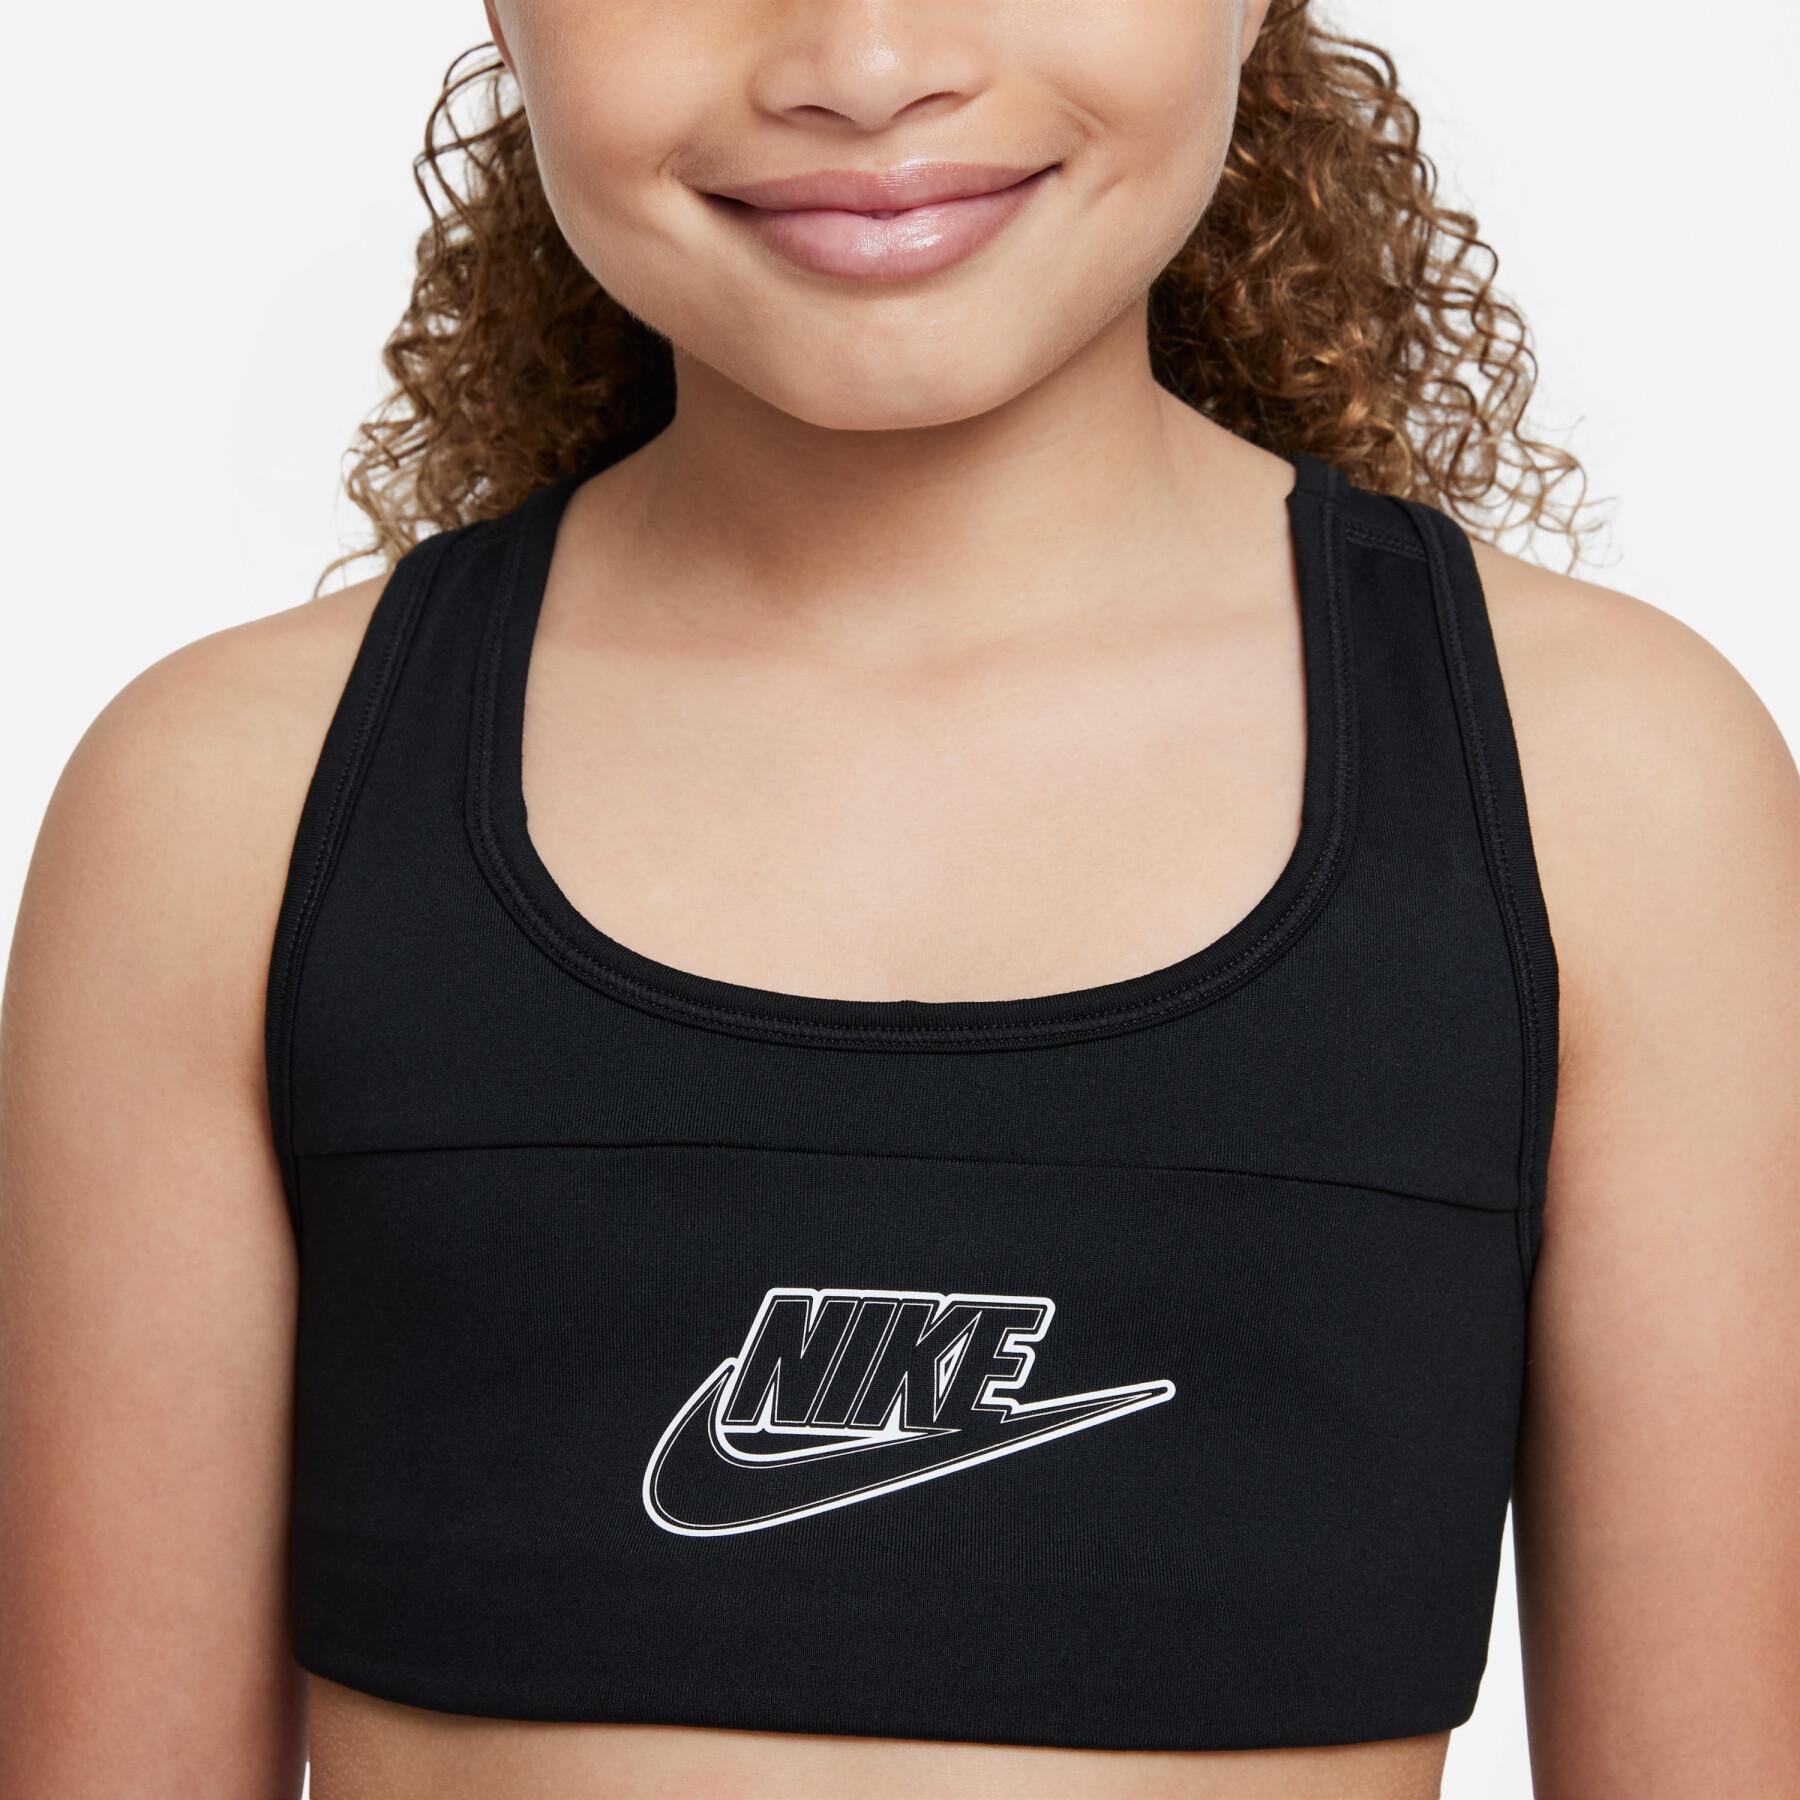 BH för flickor Nike Swsh Futura